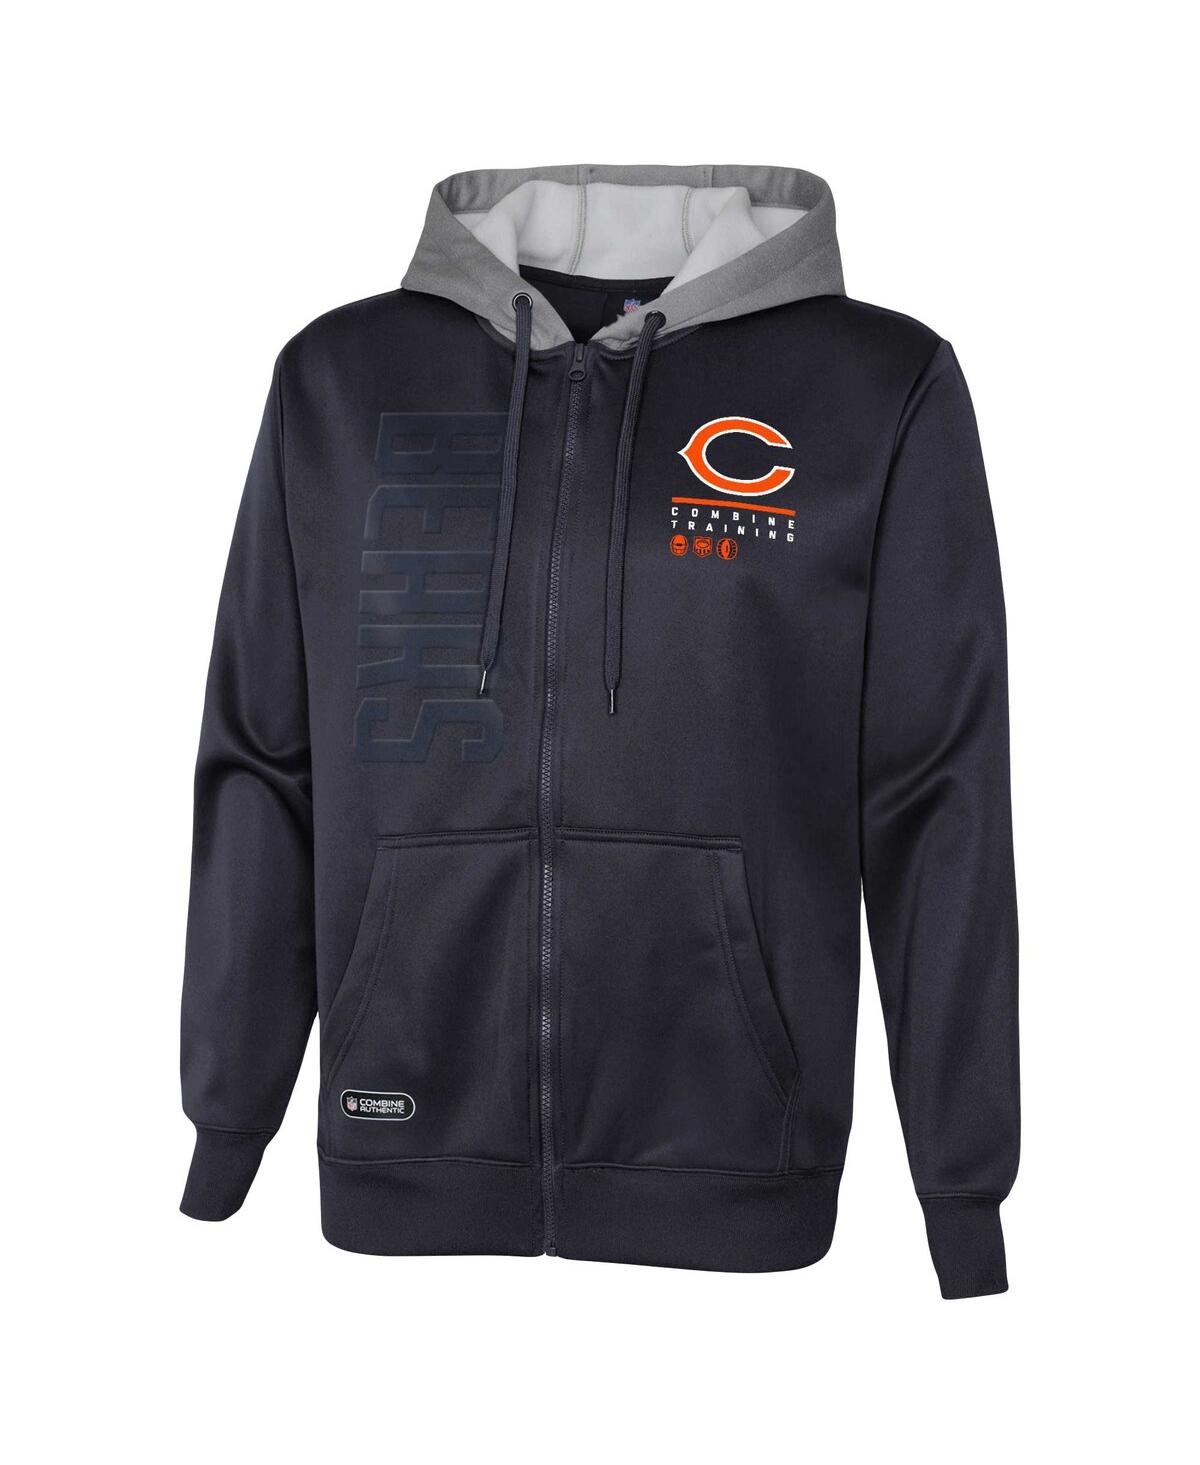 Shop Outerstuff Men's Navy Chicago Bears Combine Authentic Field Play Full-zip Hoodie Sweatshirt